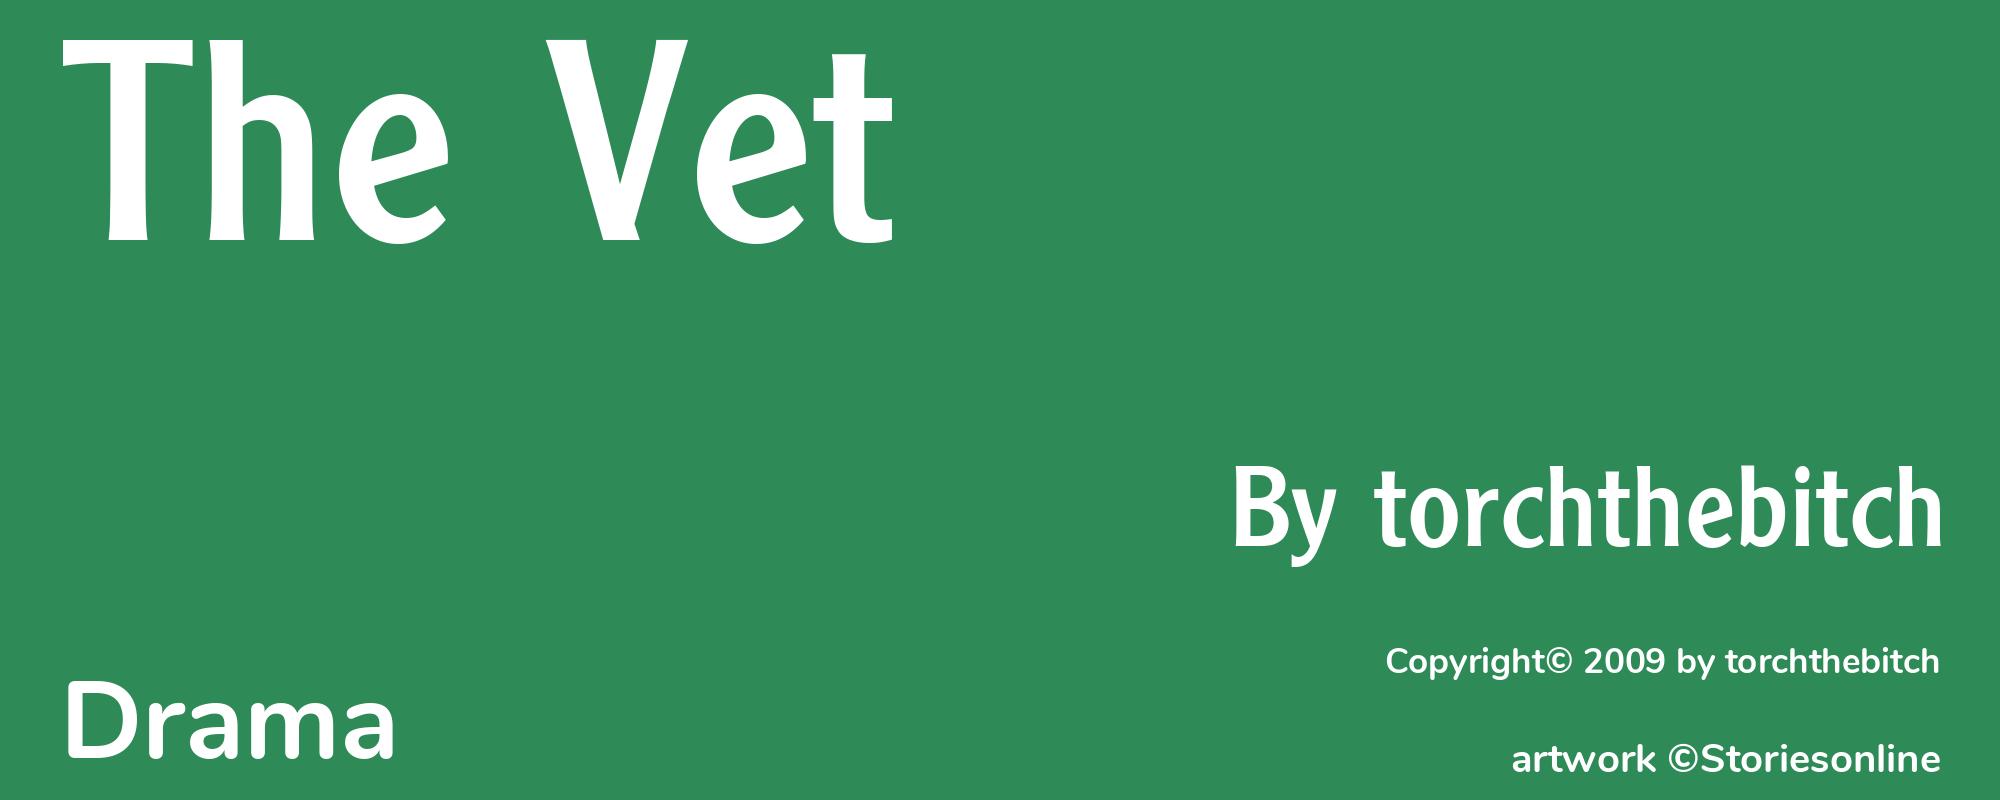 The Vet - Cover